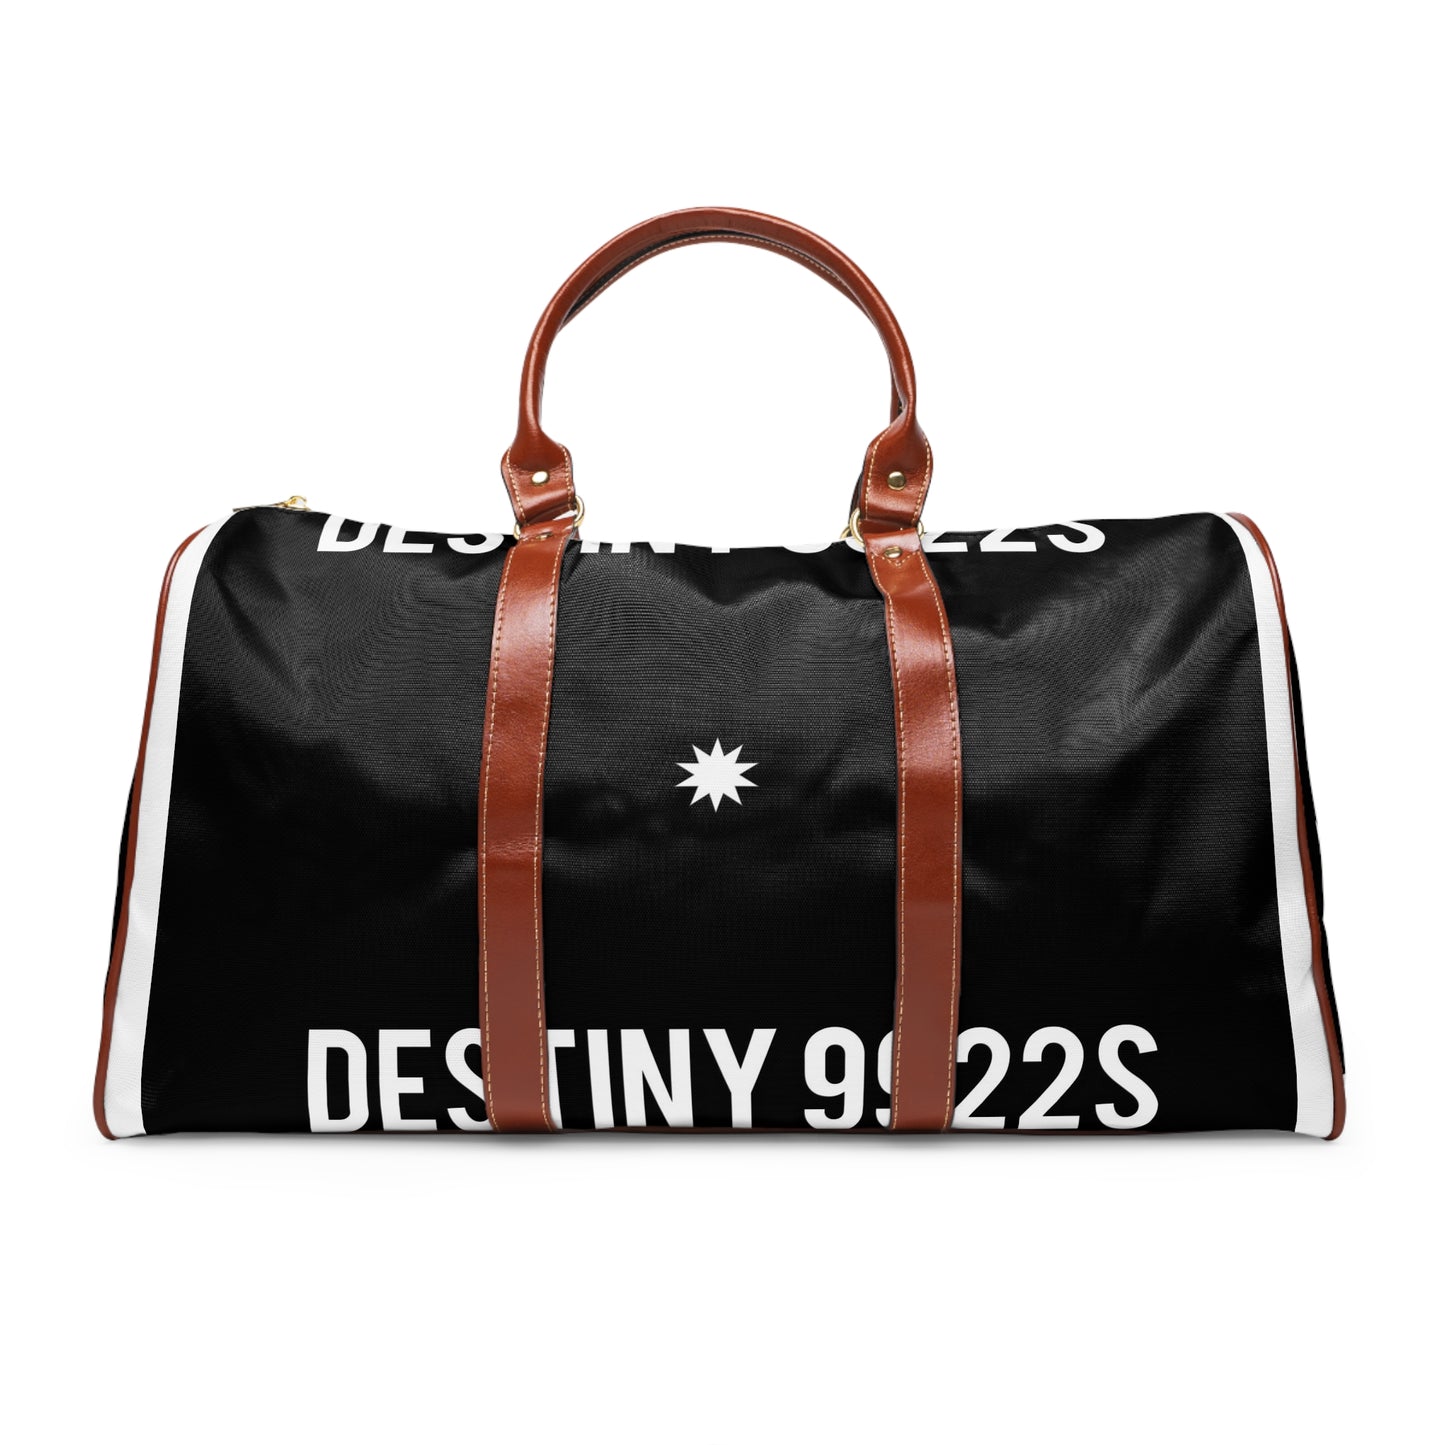 Destiny 899s Waterproof Travel Bag